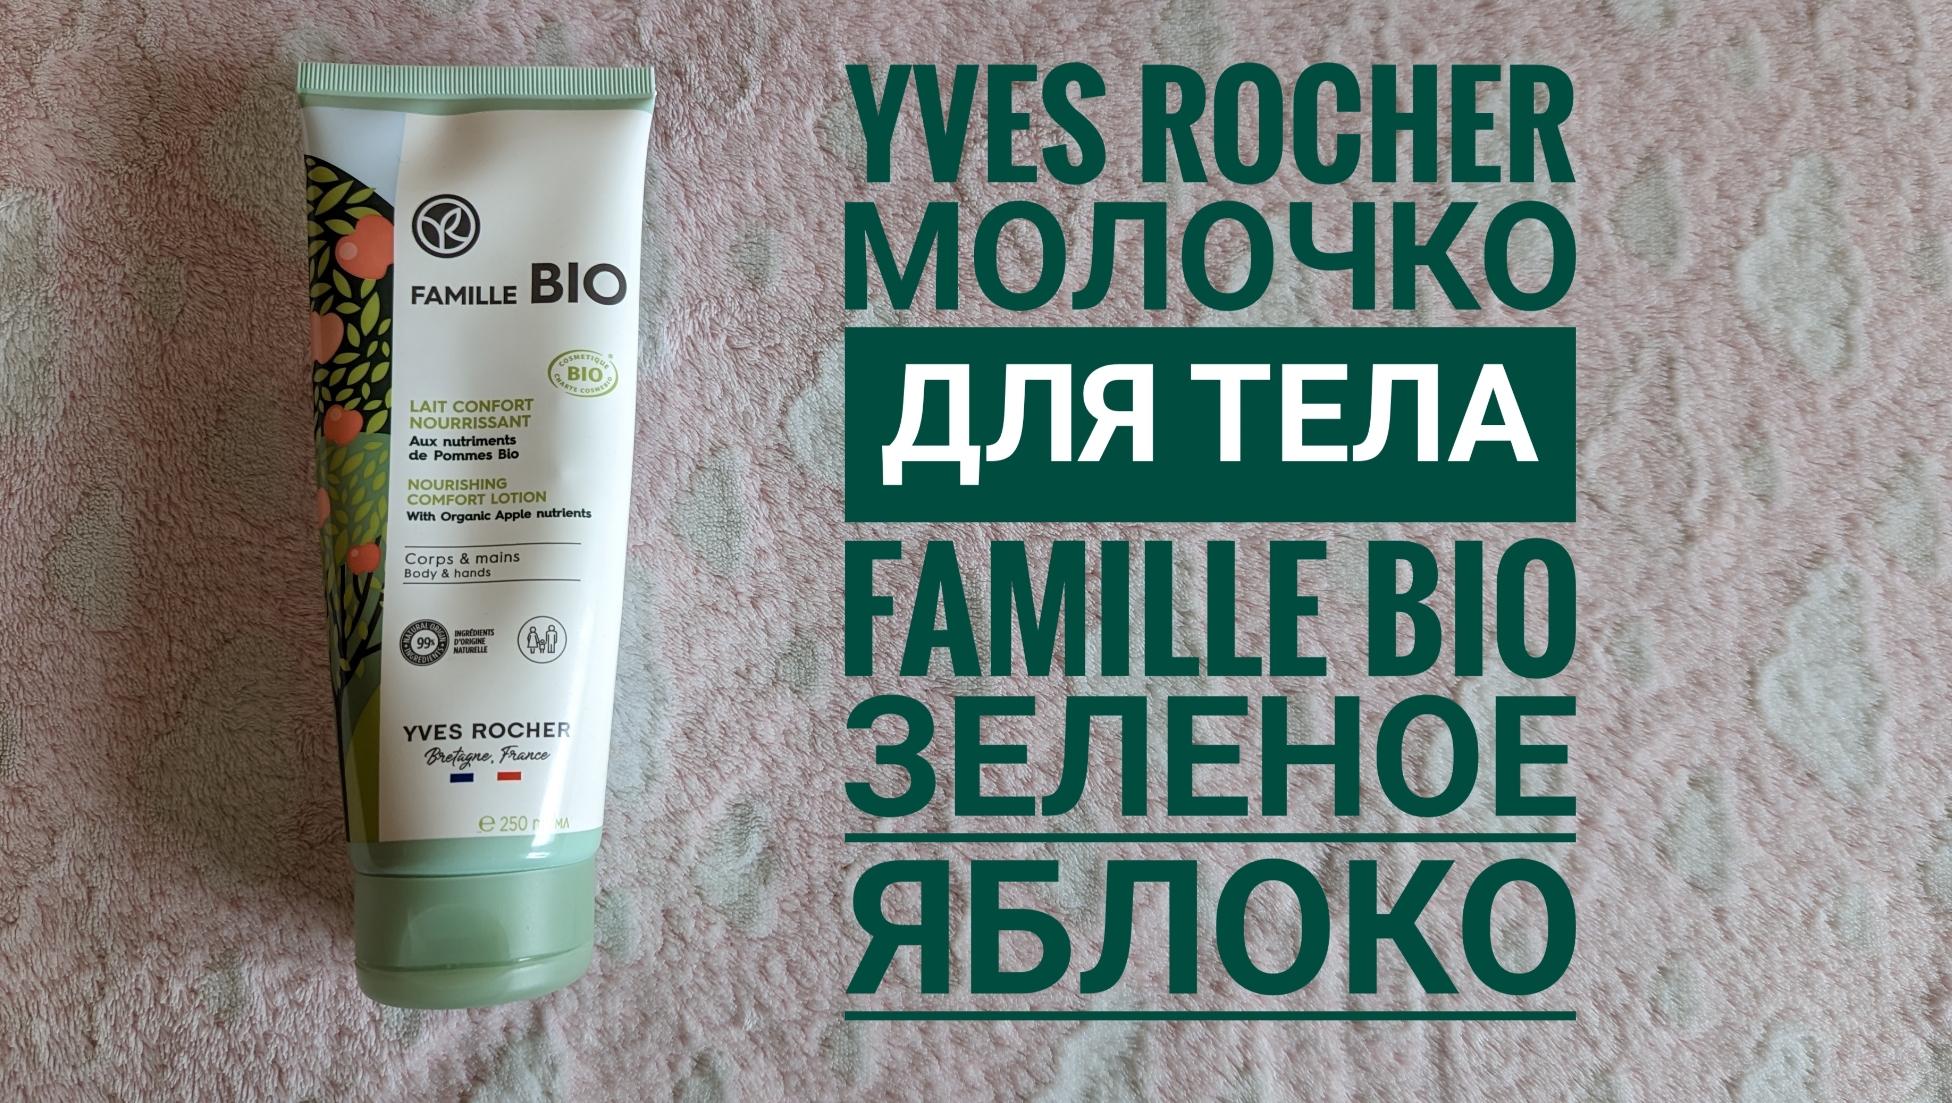 Ив Роше/ Молочко для тела Famille BIO зеленое яблоко🍏Yves Rocher /обзор